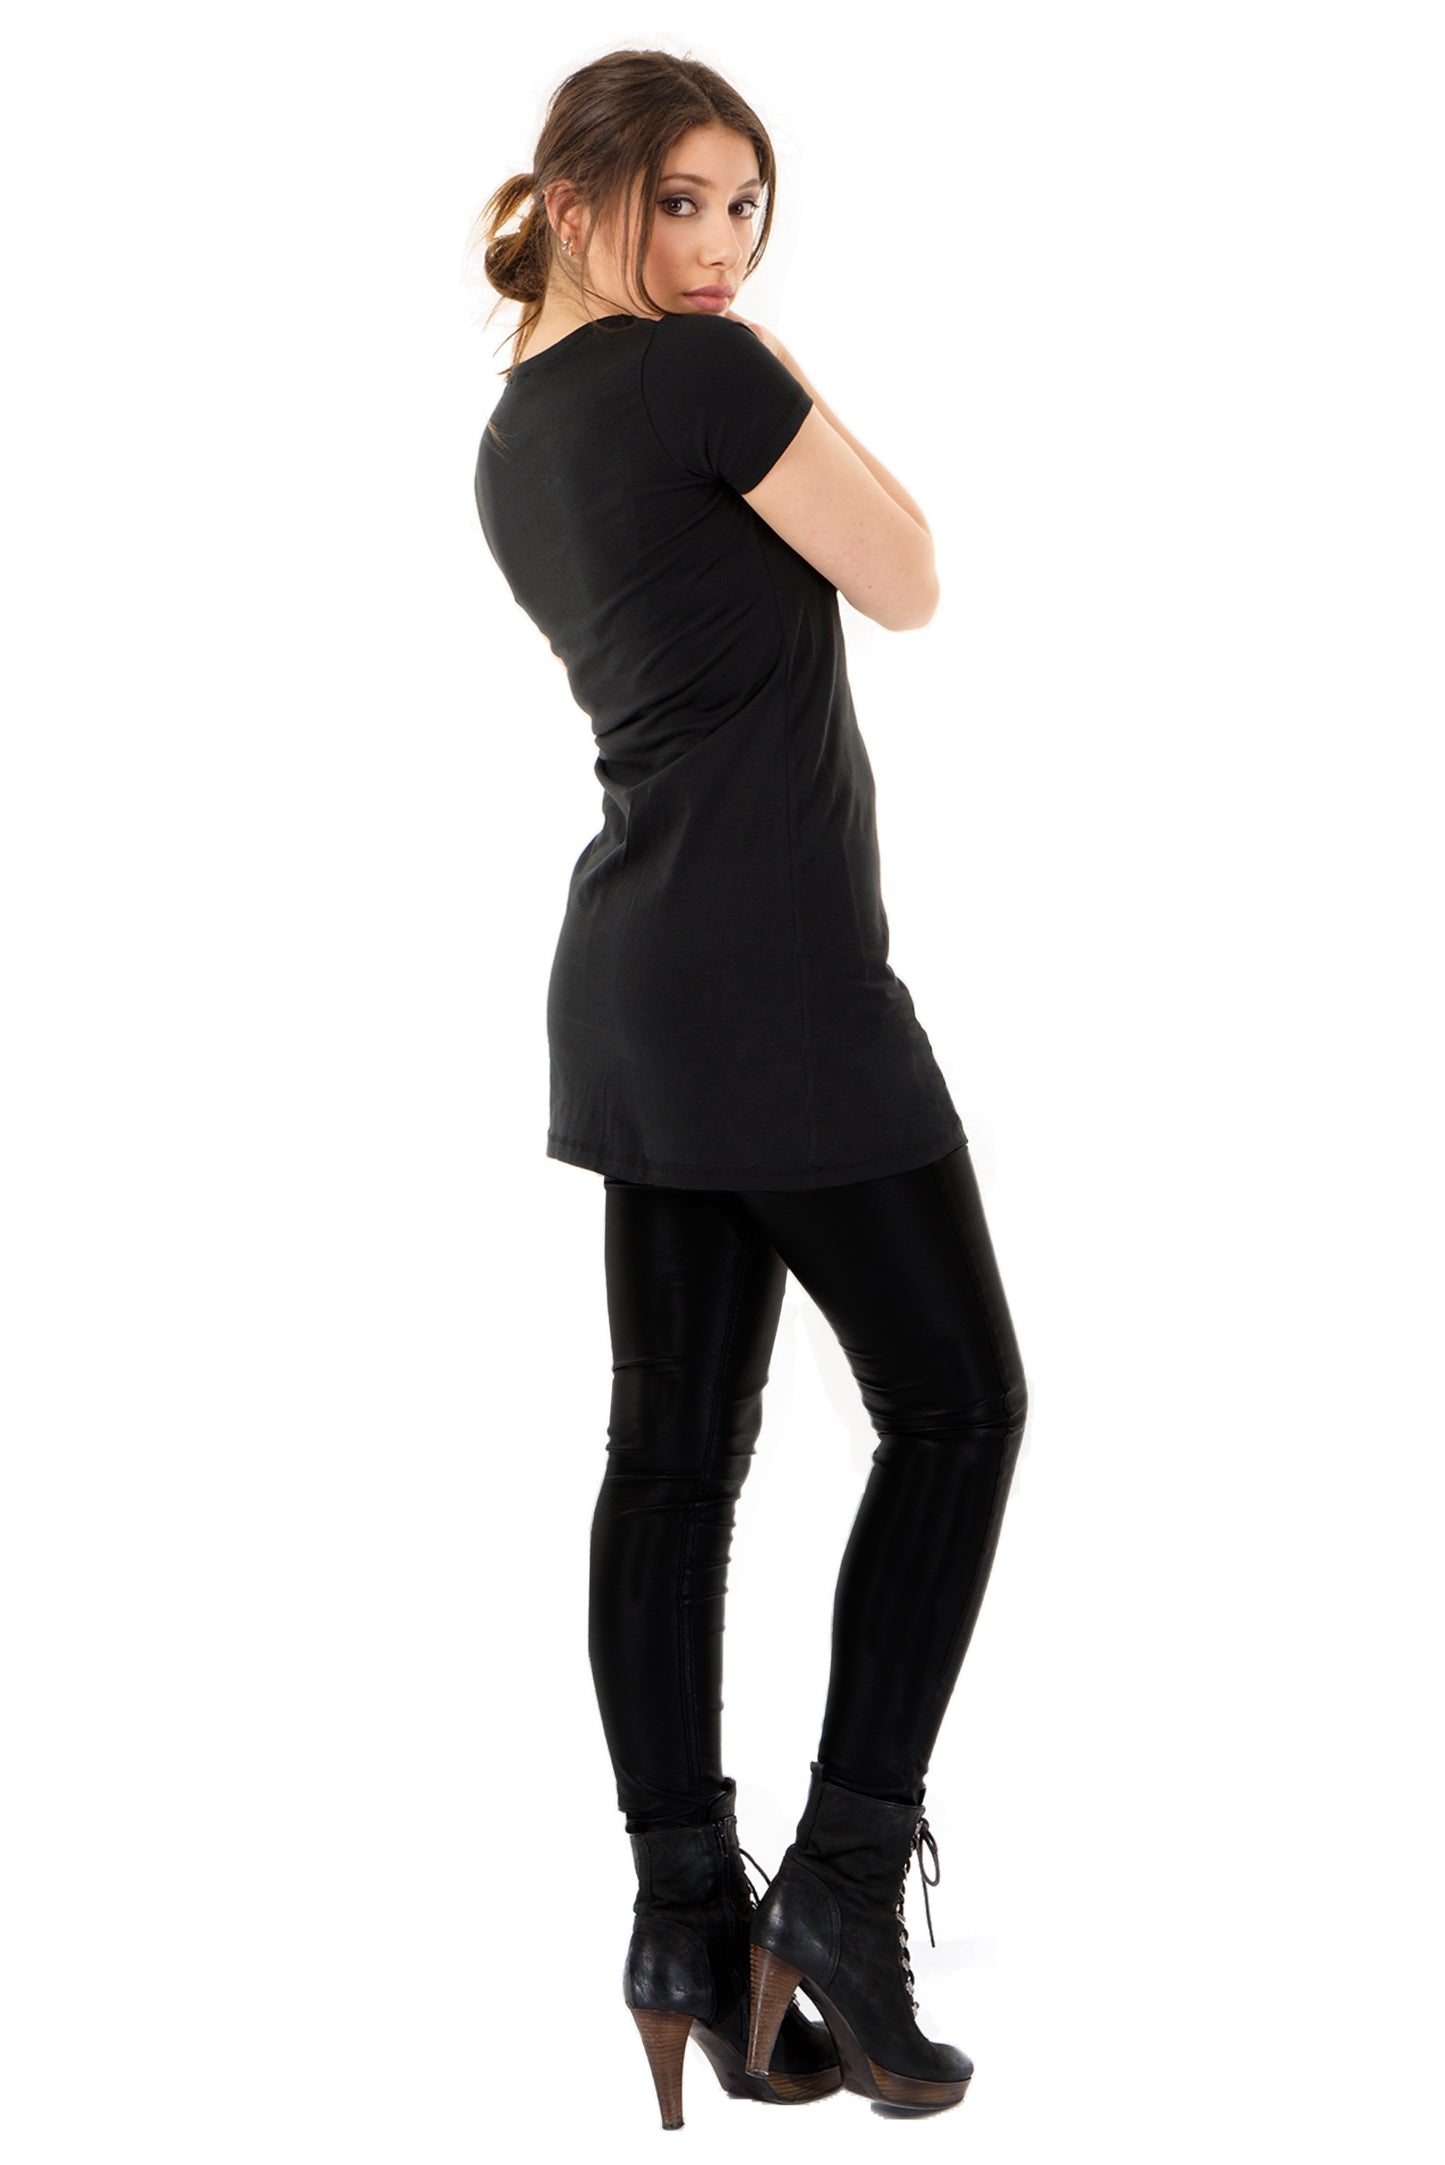 SALE Größe S Shirtkleid schwarz Logo Elfe grau